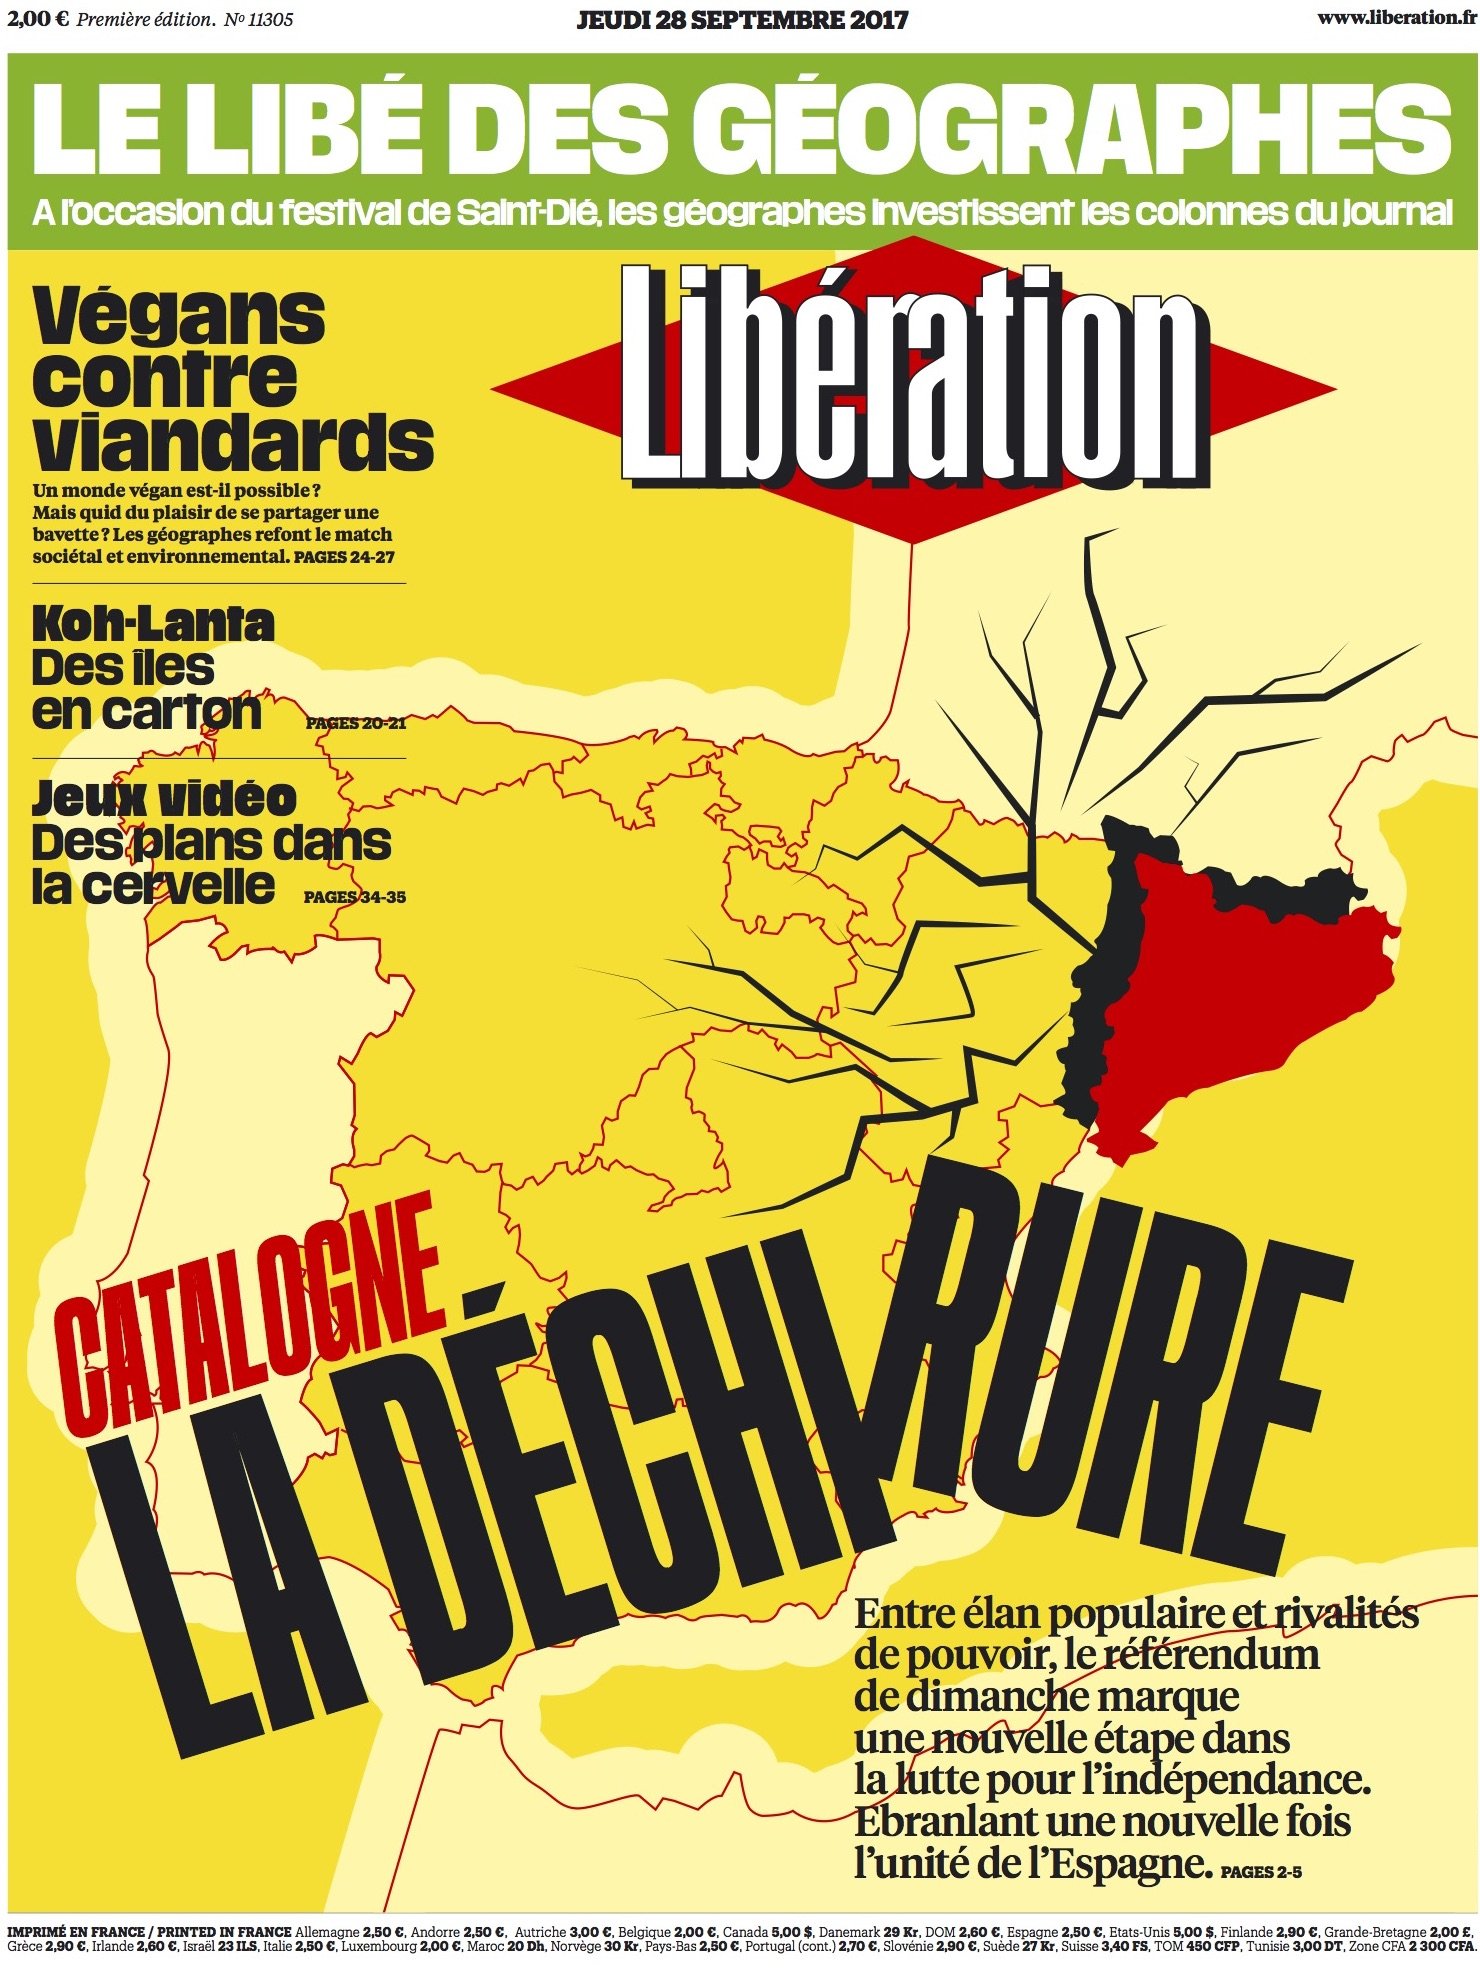 'Libération': "¿Por qué el gobierno español no deja hacer el referéndum?"